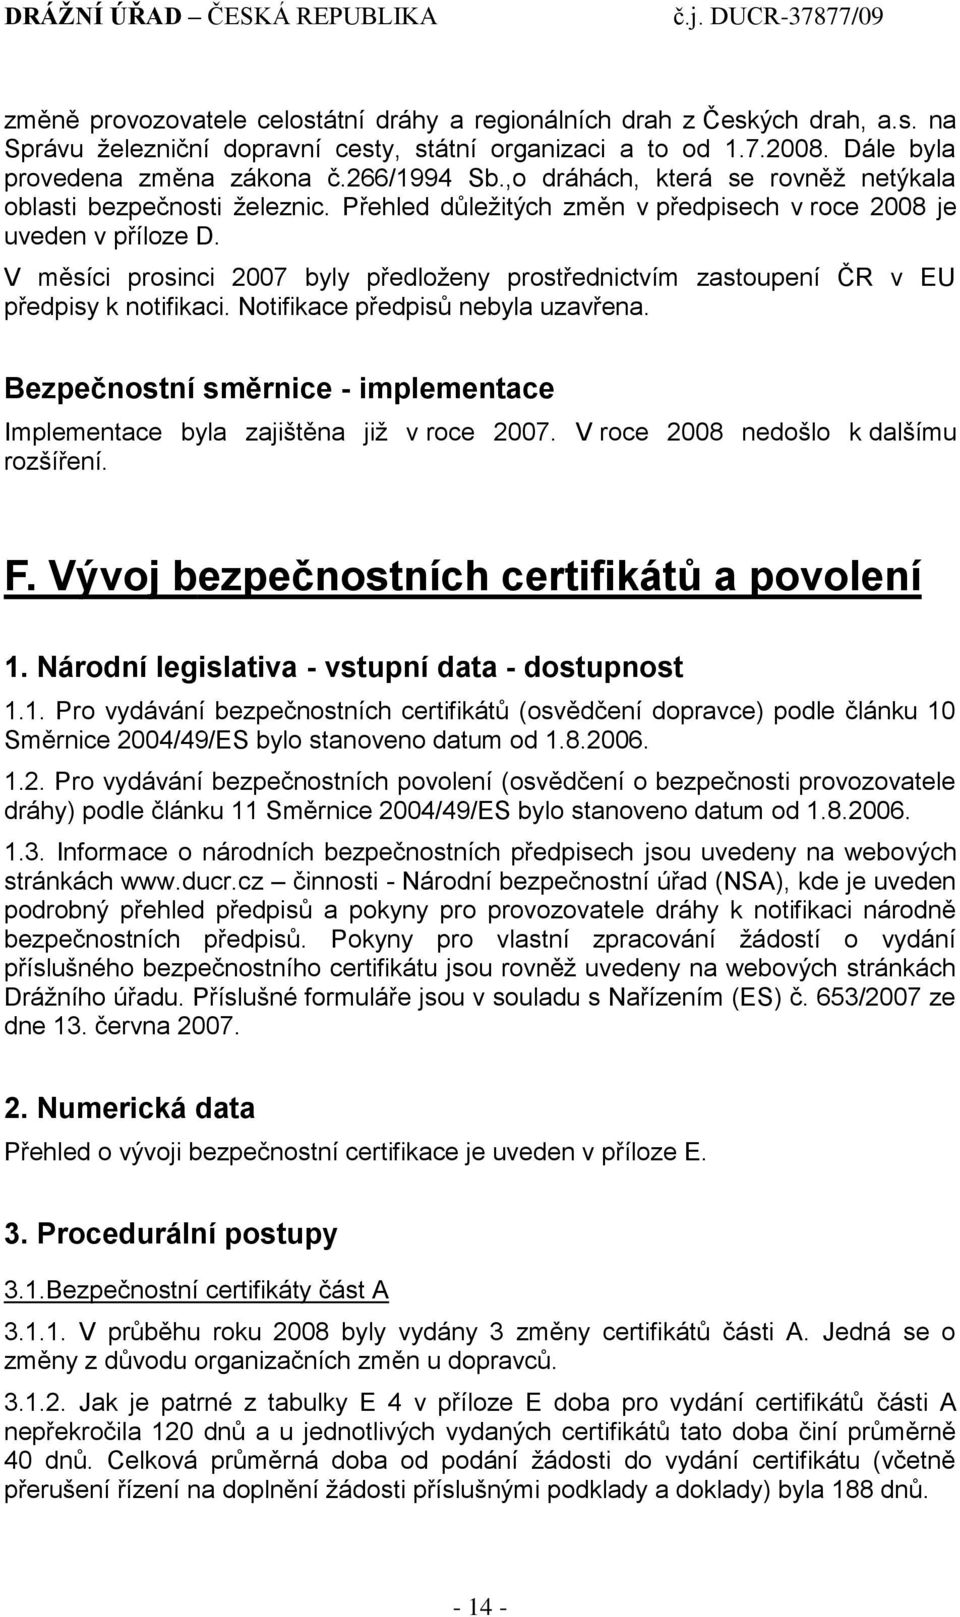 V měsíci prosinci 2007 byly předloţeny prostřednictvím zastoupení ČR v EU předpisy k notifikaci. Notifikace předpisů nebyla uzavřena.